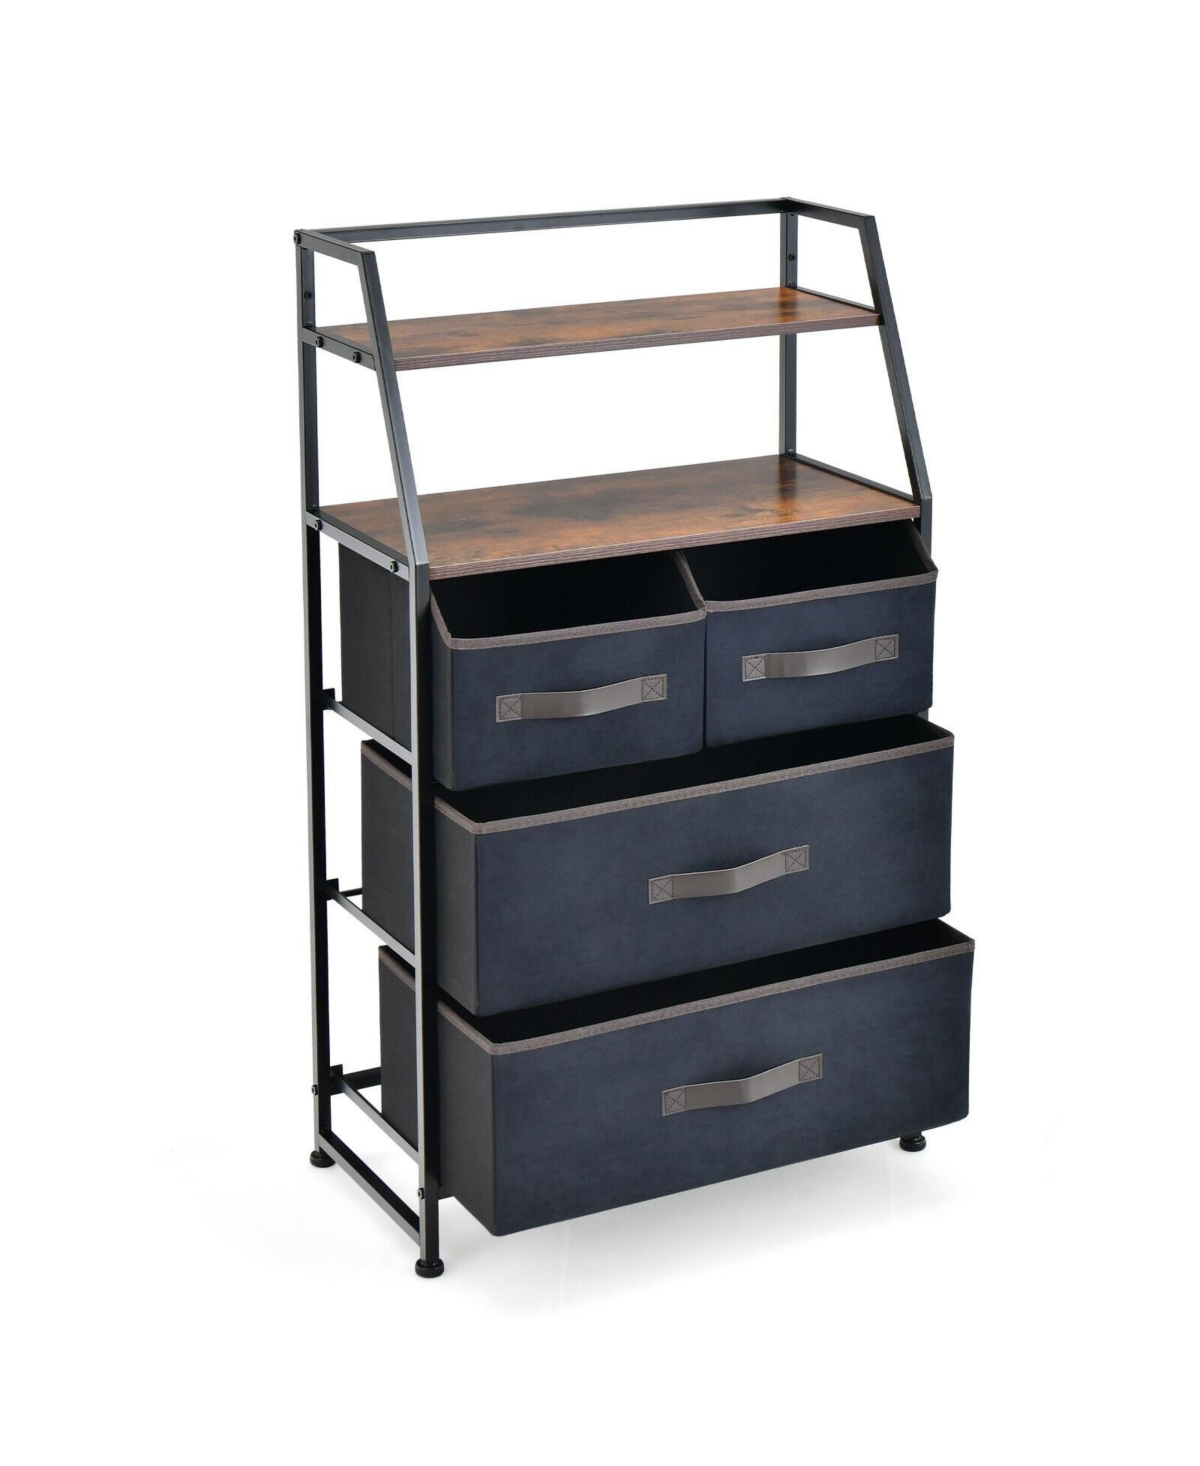 4-Drawer Free Standing Storage Dresser with 2 Open Shelves - Dark Brown